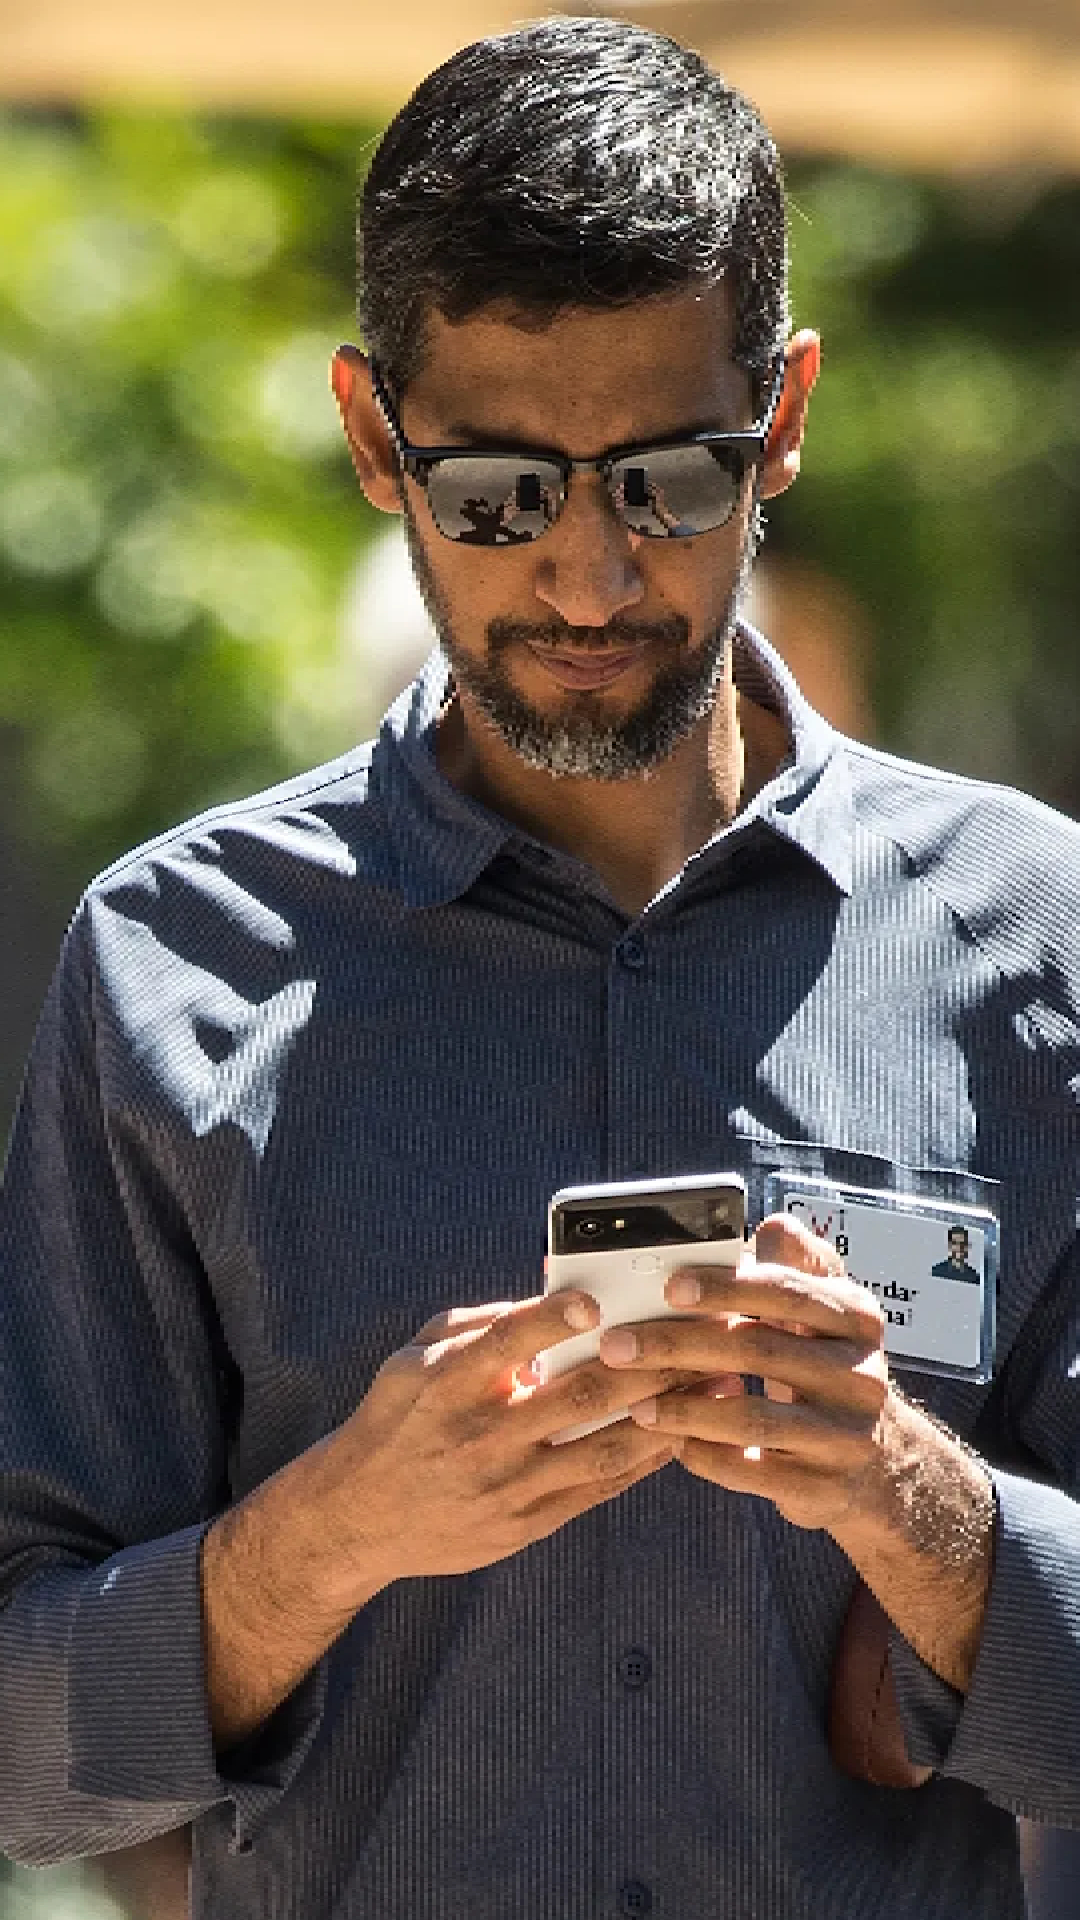 Google CEO सुंदर पिचाई यूज करते हैं 20 स्मार्टफोन, वजह जानकर हो जाएंगे हैरान